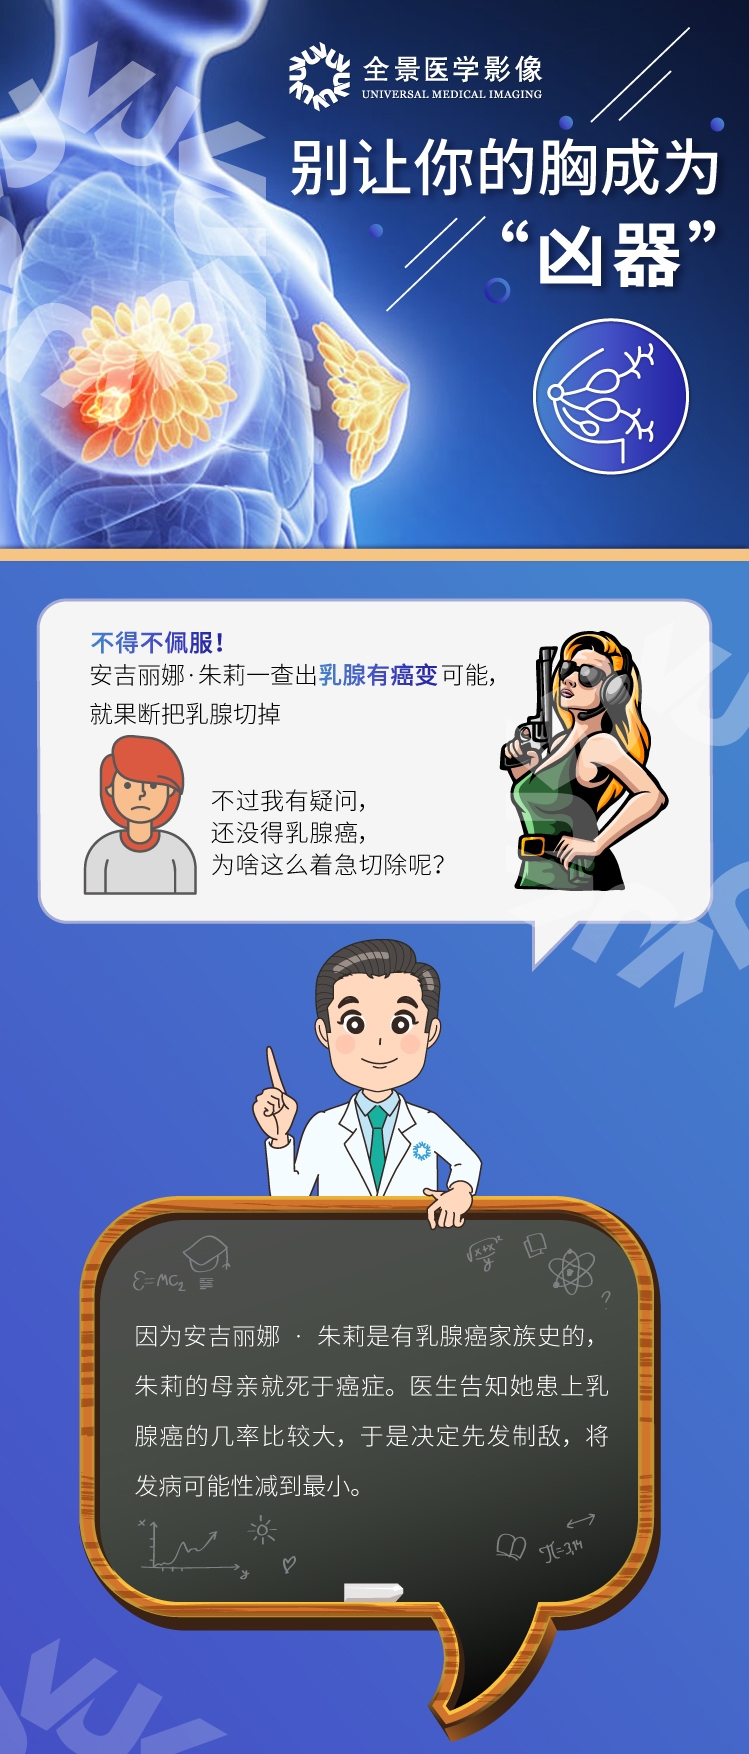 上海乳腺癌筛查